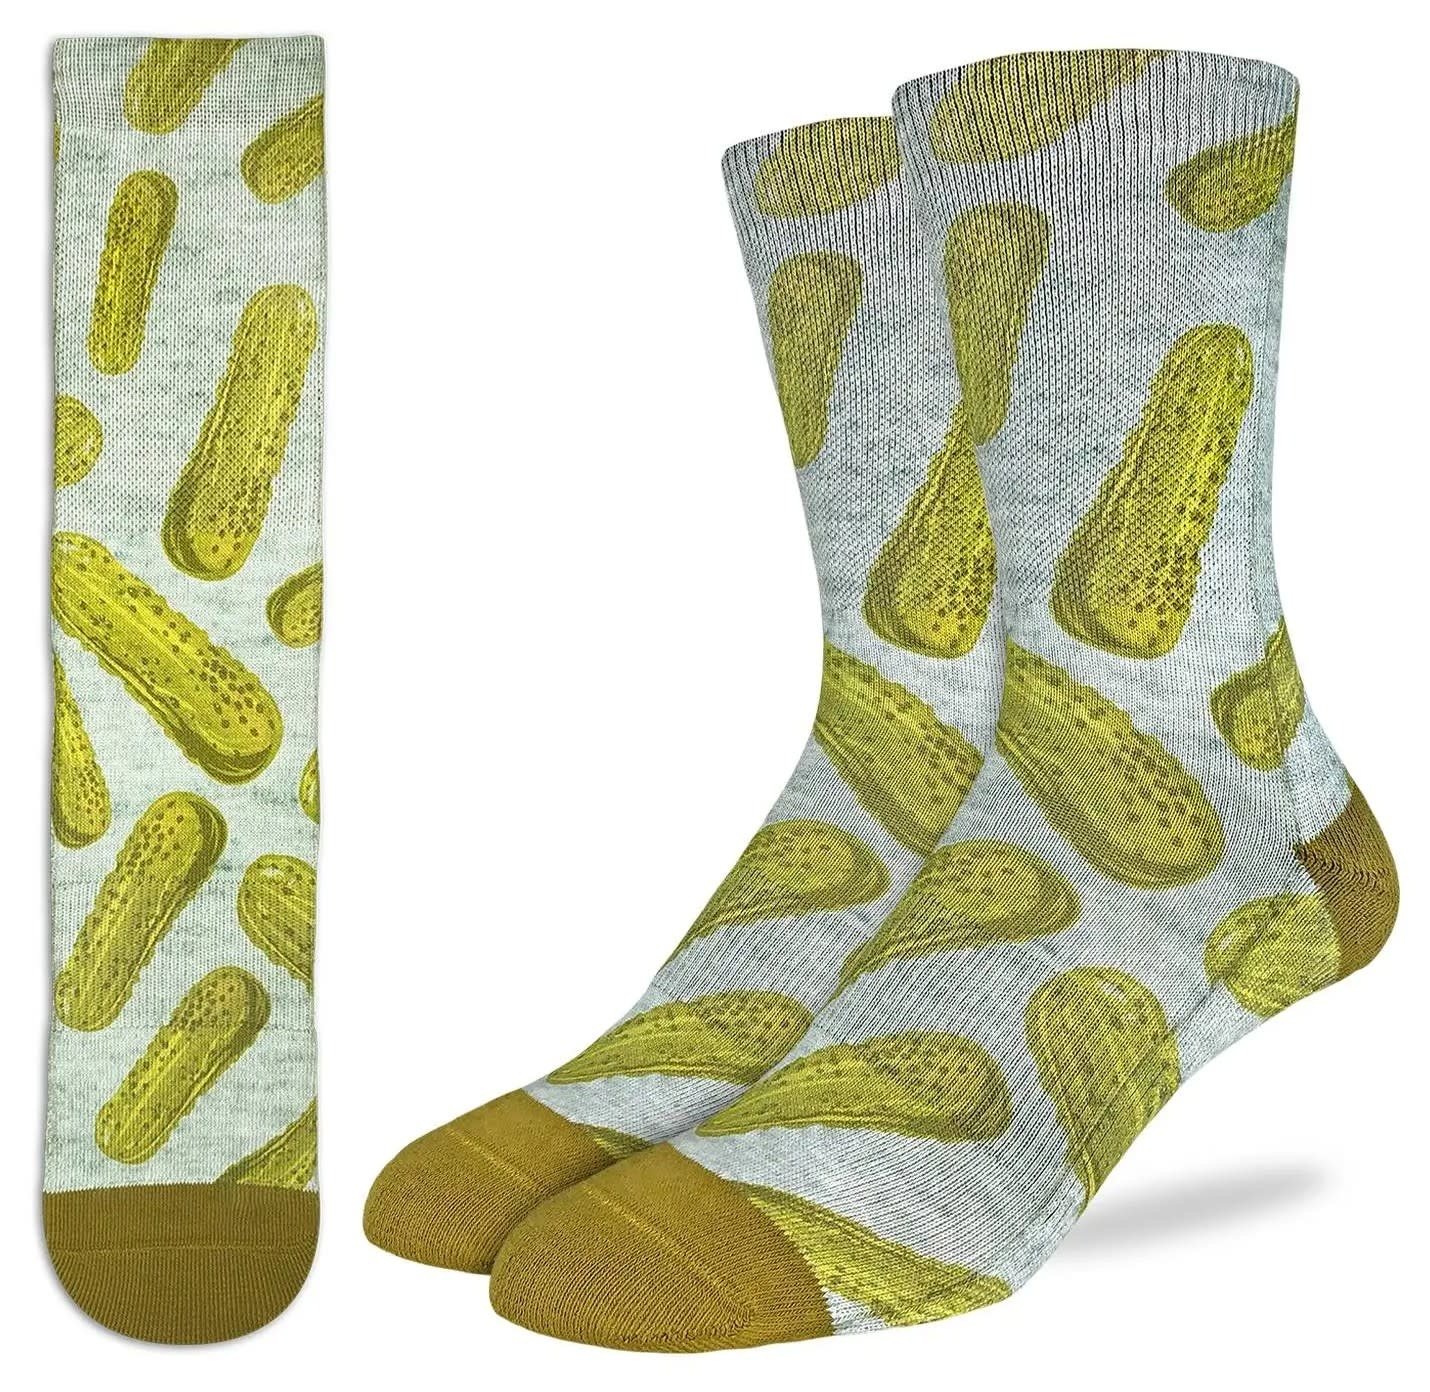 Wicked Pickle Men's Crew Socks